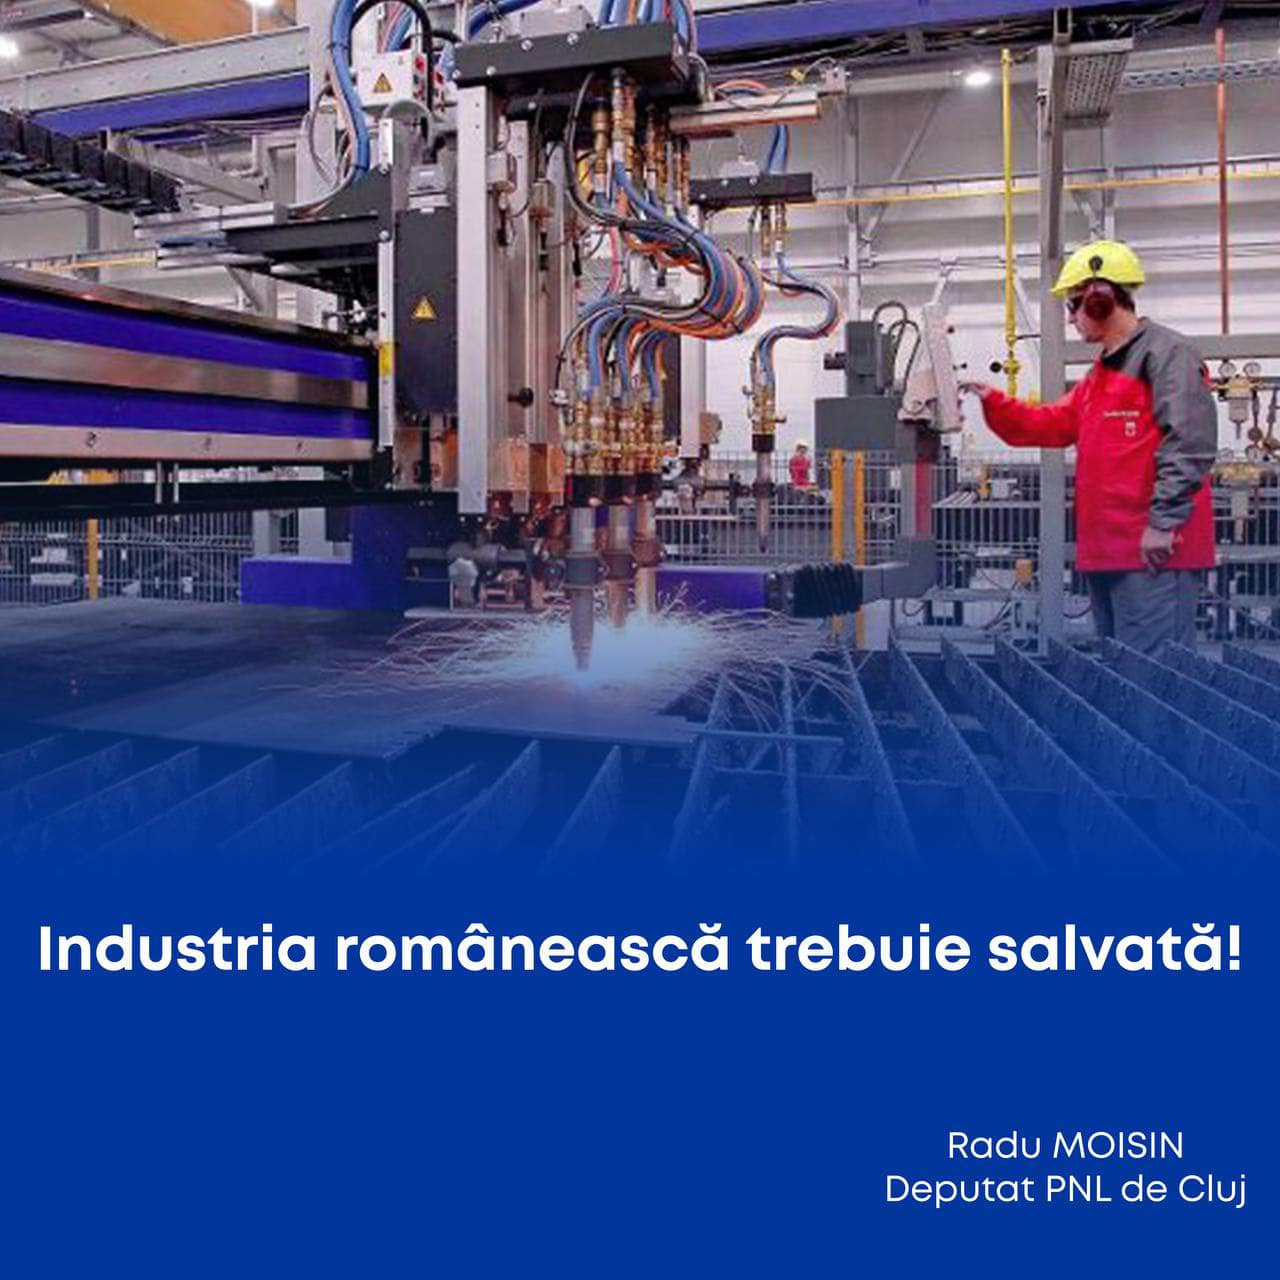 Radu Moisin: „Industria românească trebuie salvată!”. FOTO: Facebook/ Radu Moisin